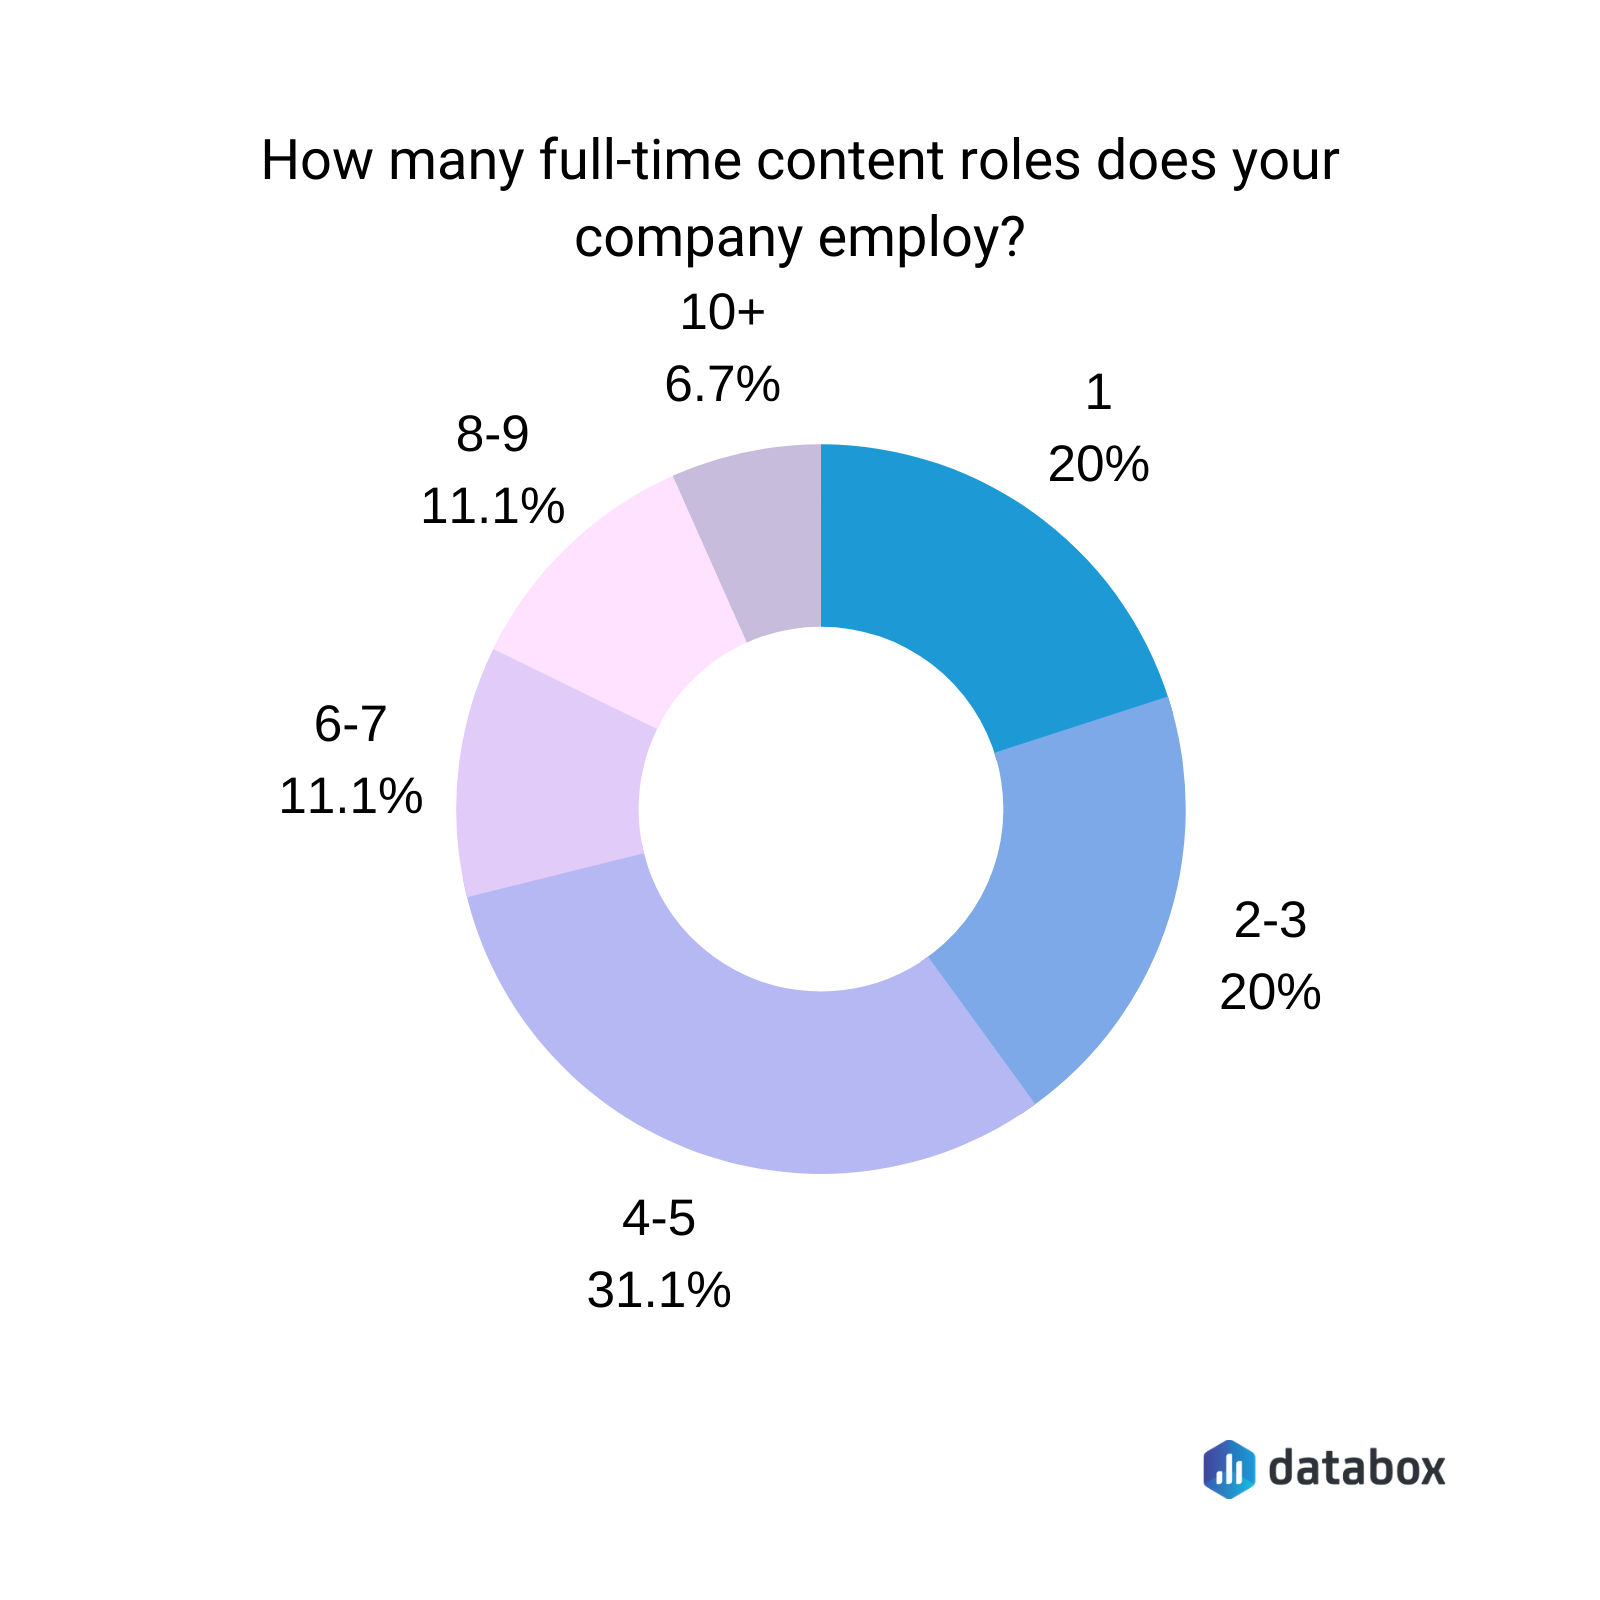 كم عدد أدوار المحتوى بدوام كامل التي تستخدمها شركتك؟